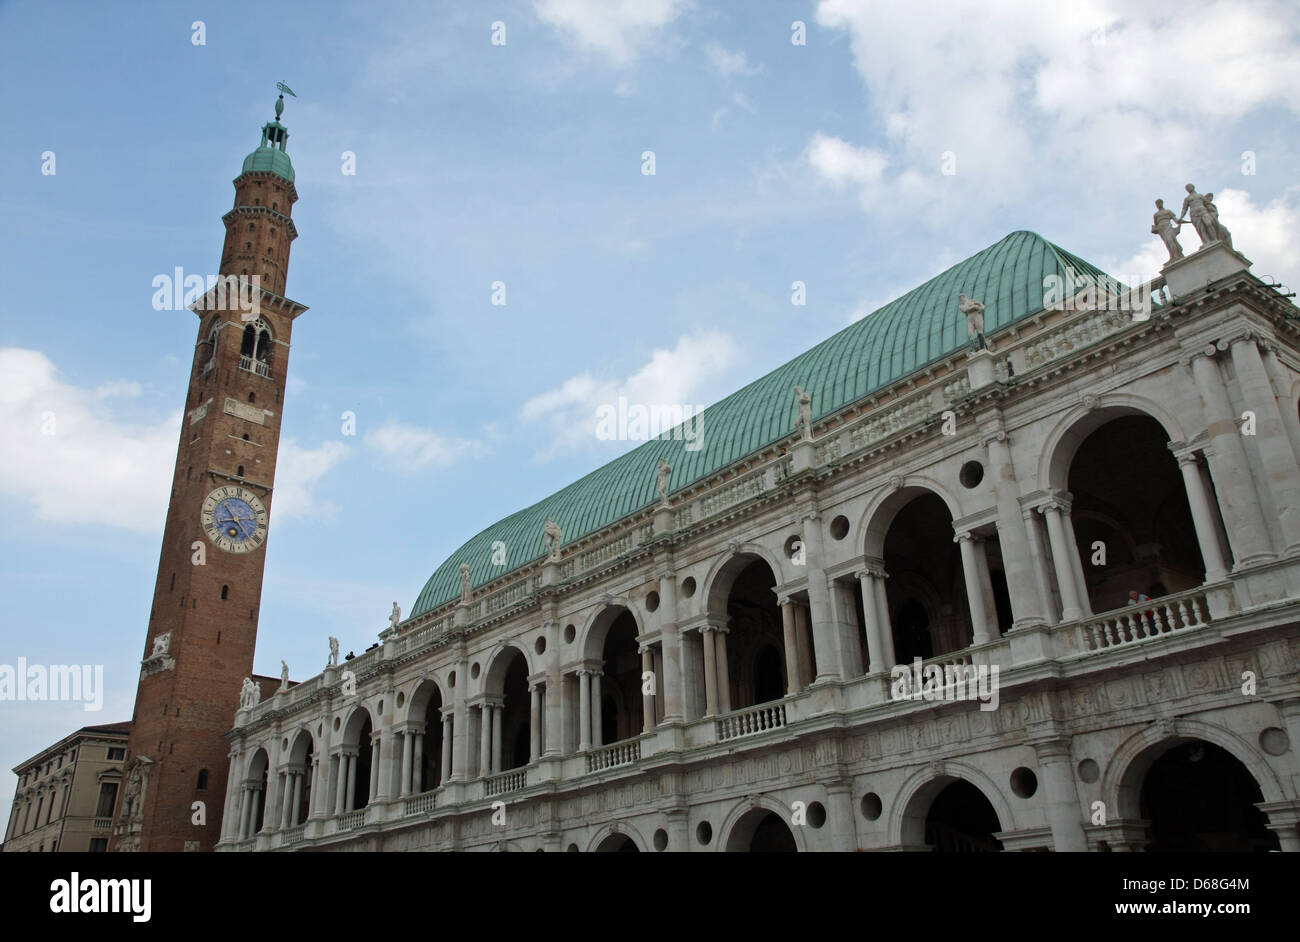 Maestoso edificio storico in marmo e mattoni con alta torre nell'antica città di Vicenza in Italia Foto Stock